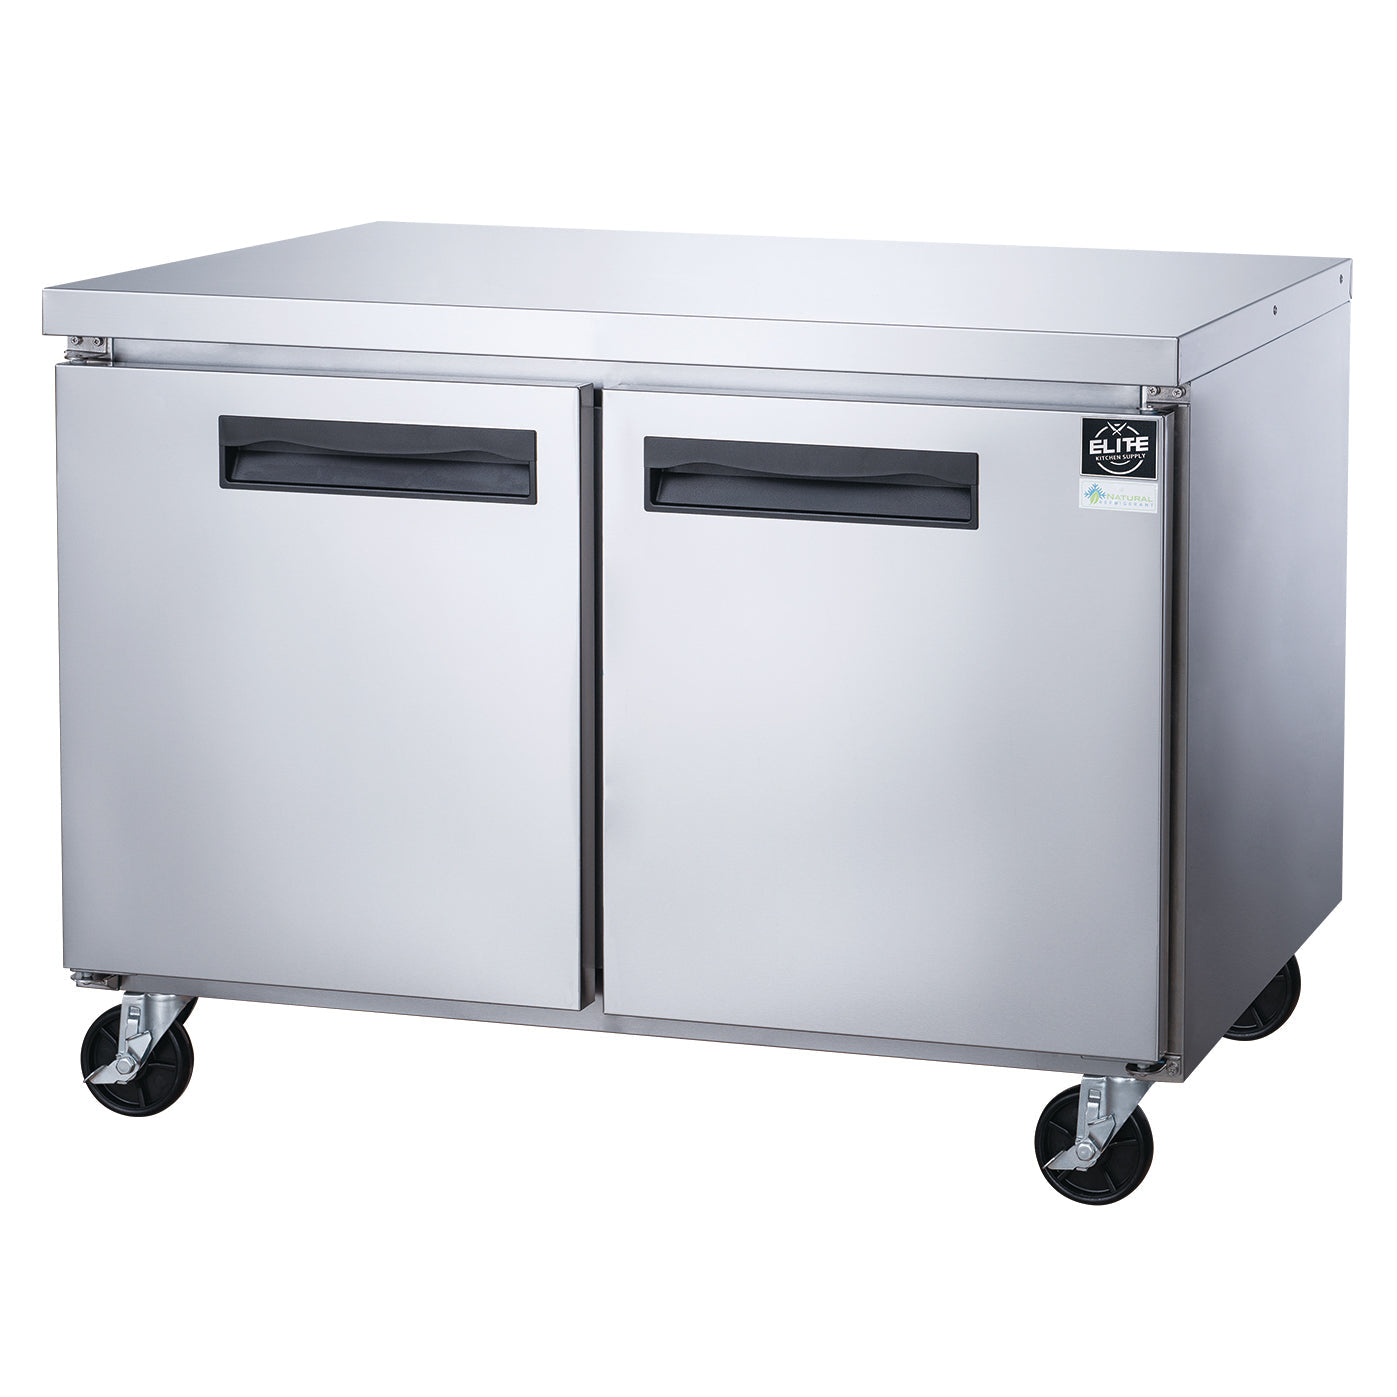 EUC60F 2-Door Undercounter Commercial Freezer